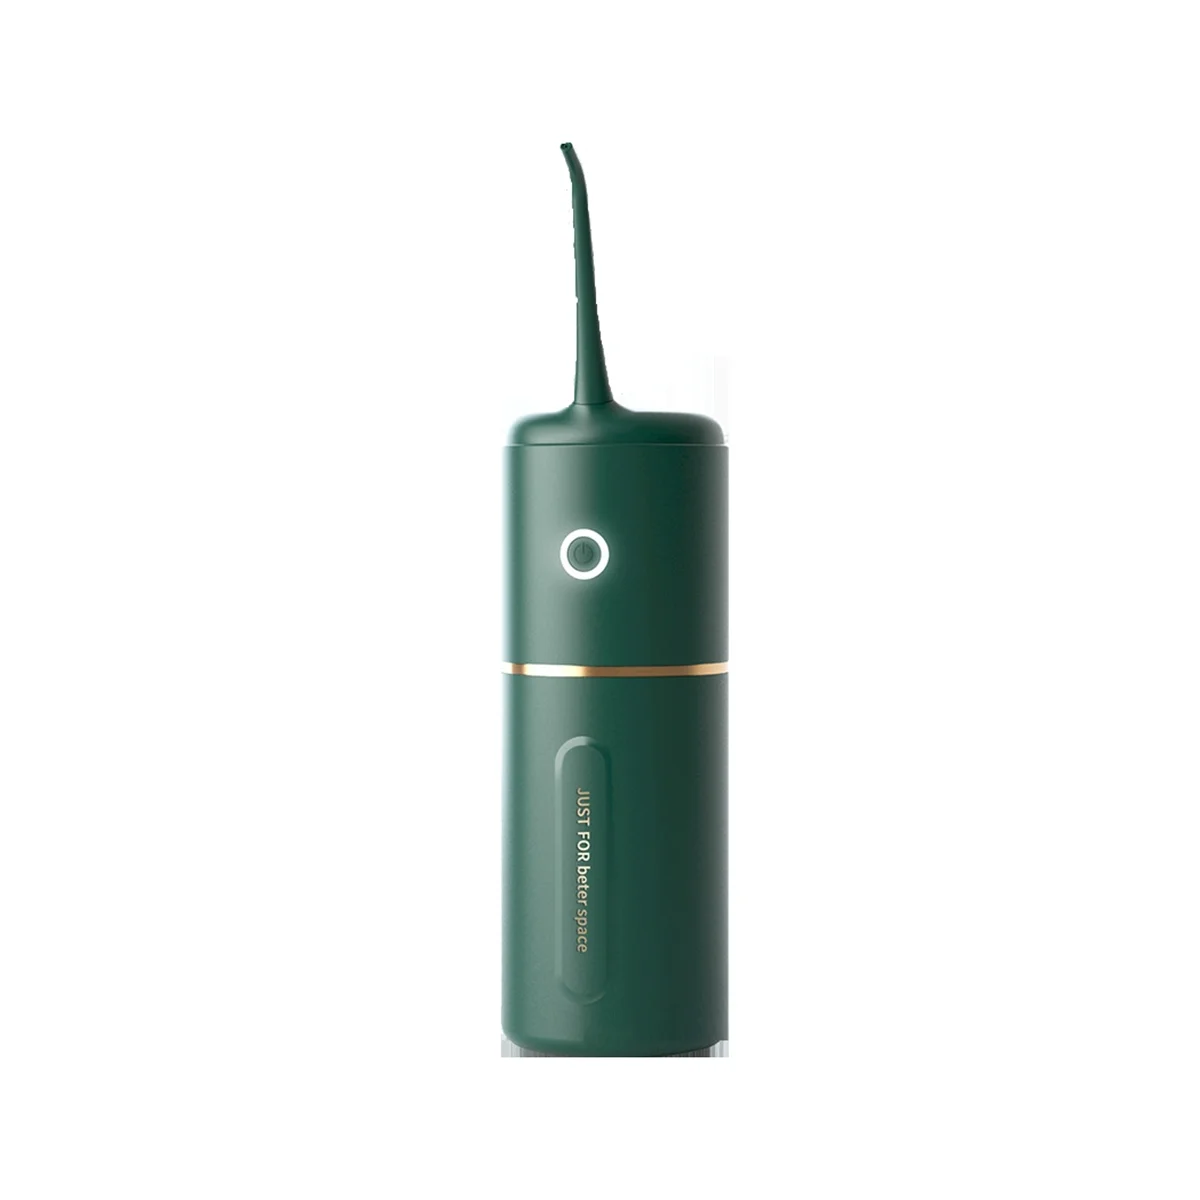 

Мощный ирригатор для чистки зубов, устройство для очистки полости рта, для отбеливания зубов, для здоровья, зеленый цвет